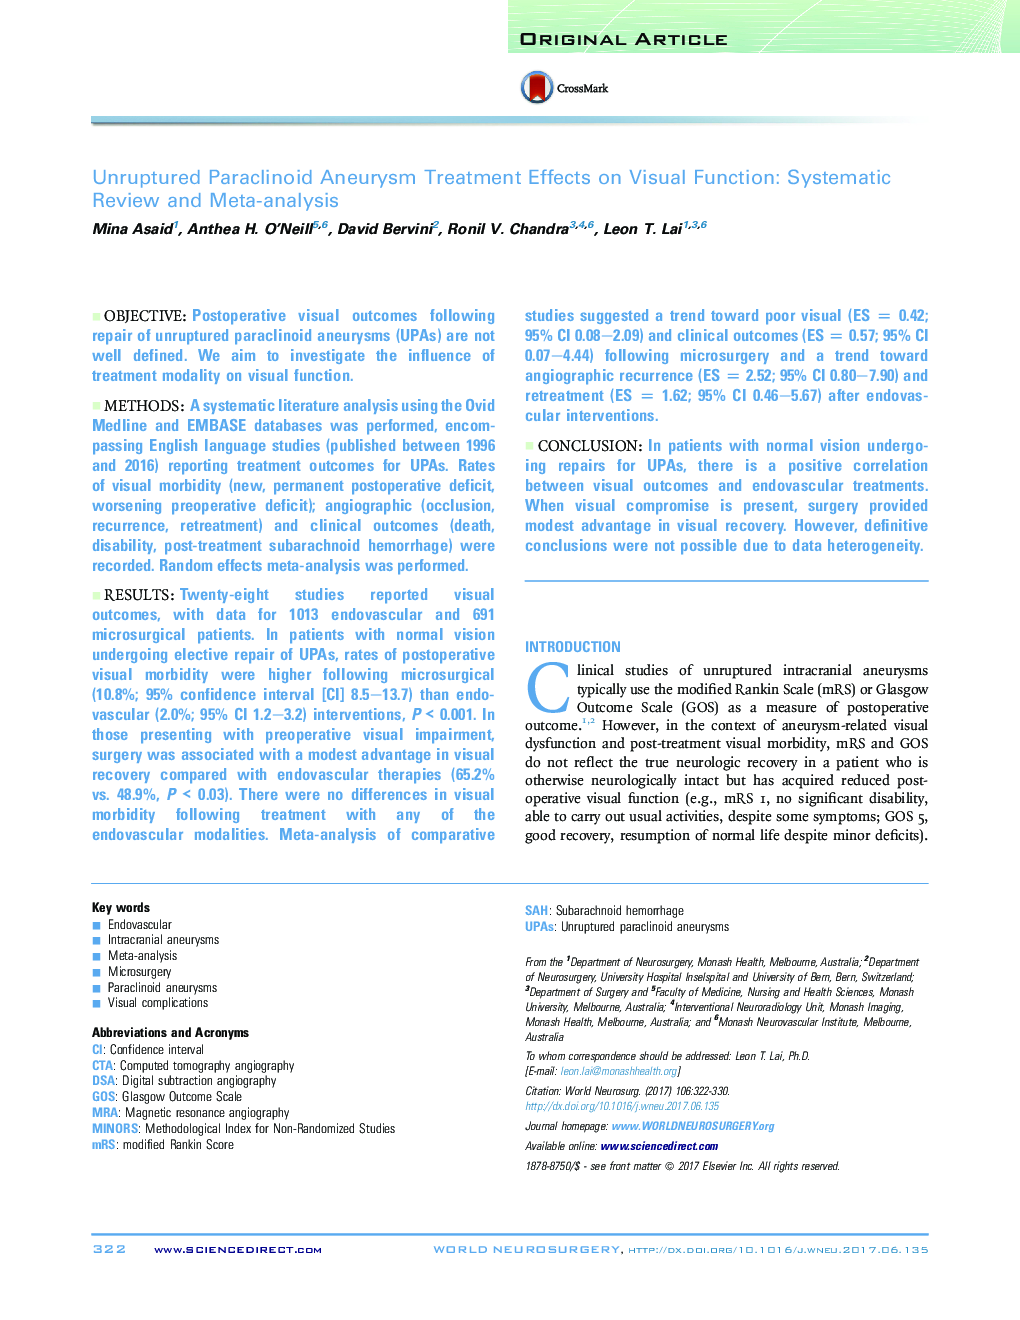 تأثیرات اصلی درمان آئرویسم پاراکلینوئید در مورد عملکرد ویژوال: بررسی سیستماتیک و متاآنالیز 